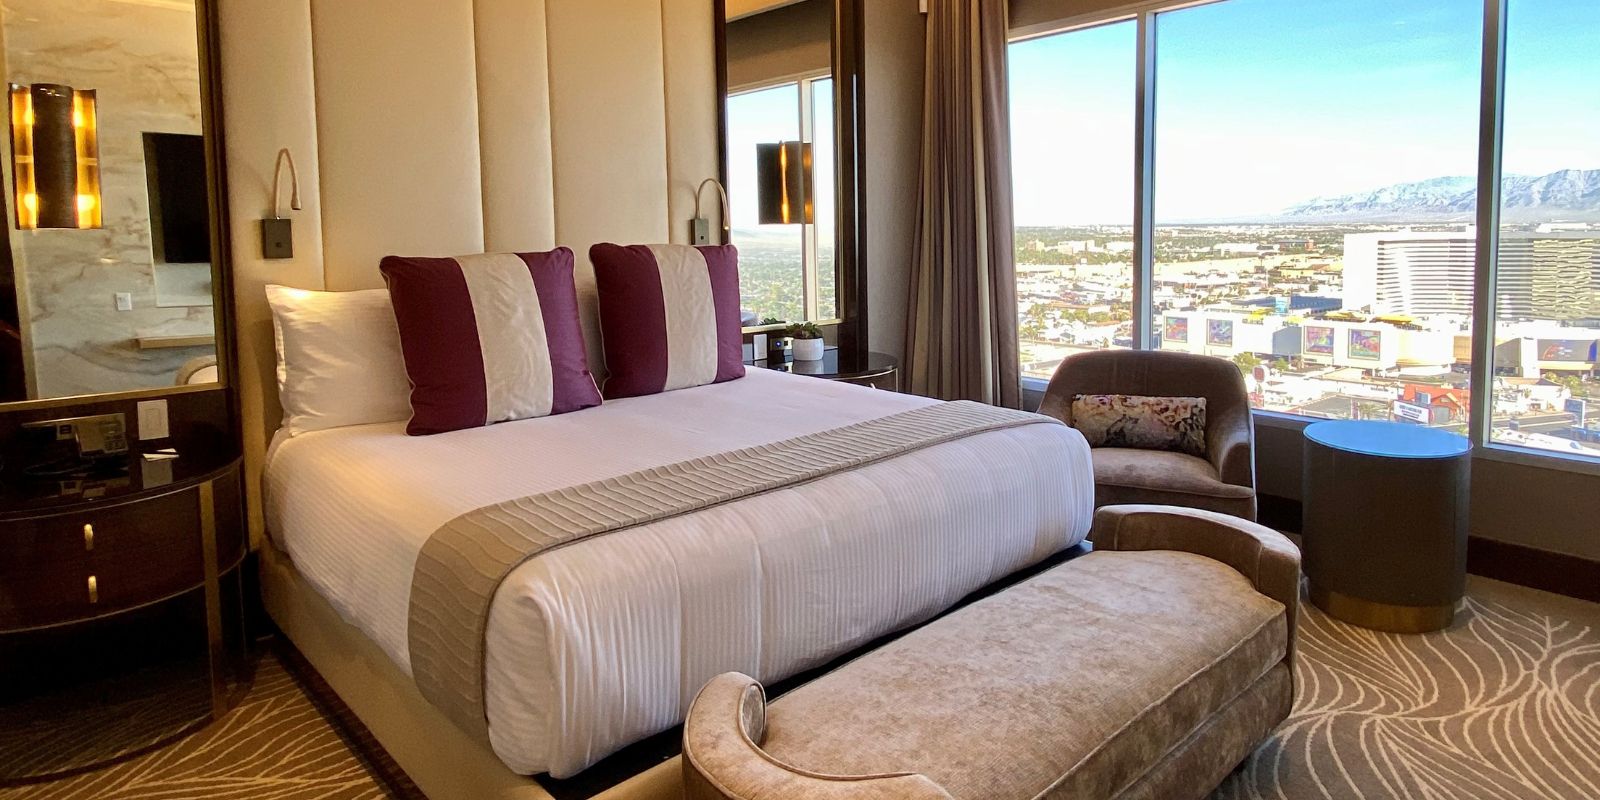 Hotel Rooms & Suites, Grand Sierra Resort